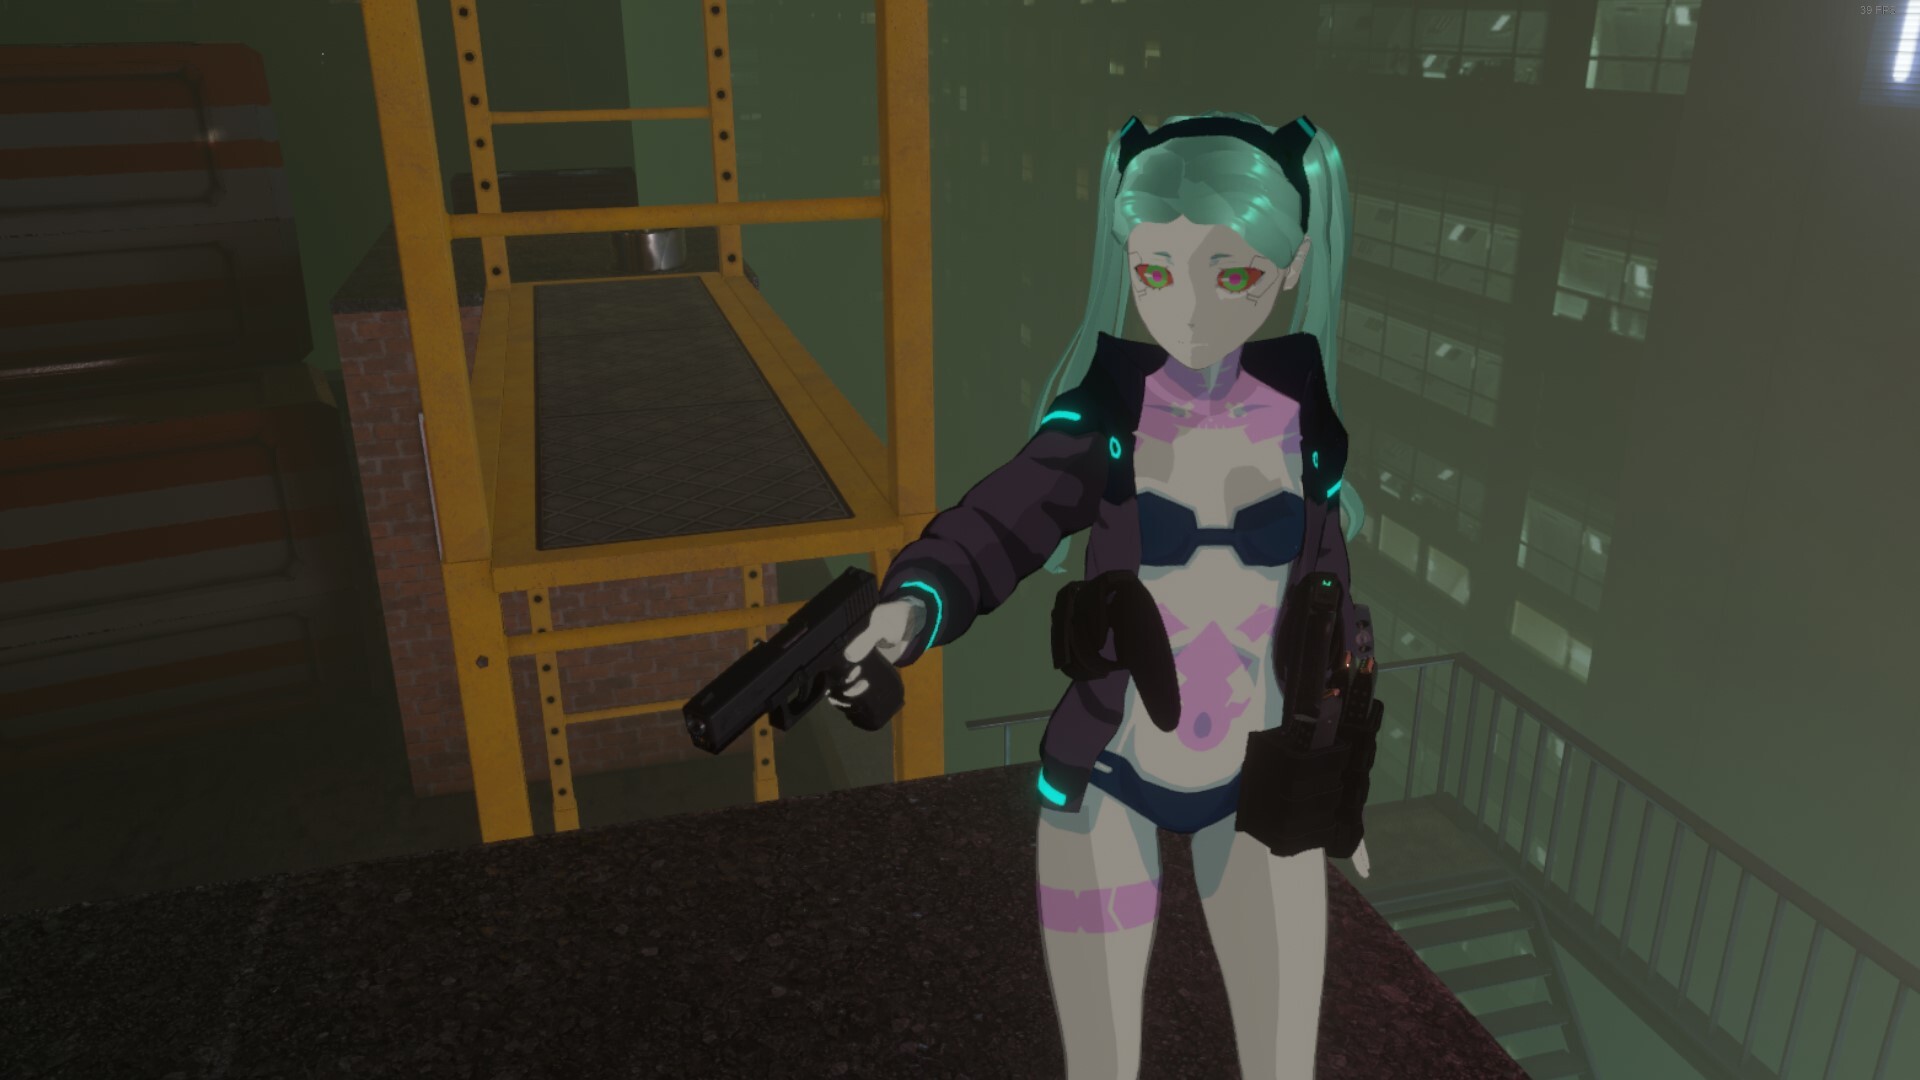 I used mods to recreate Rebecca in Cyberpunk 2077 : r/Edgerunners